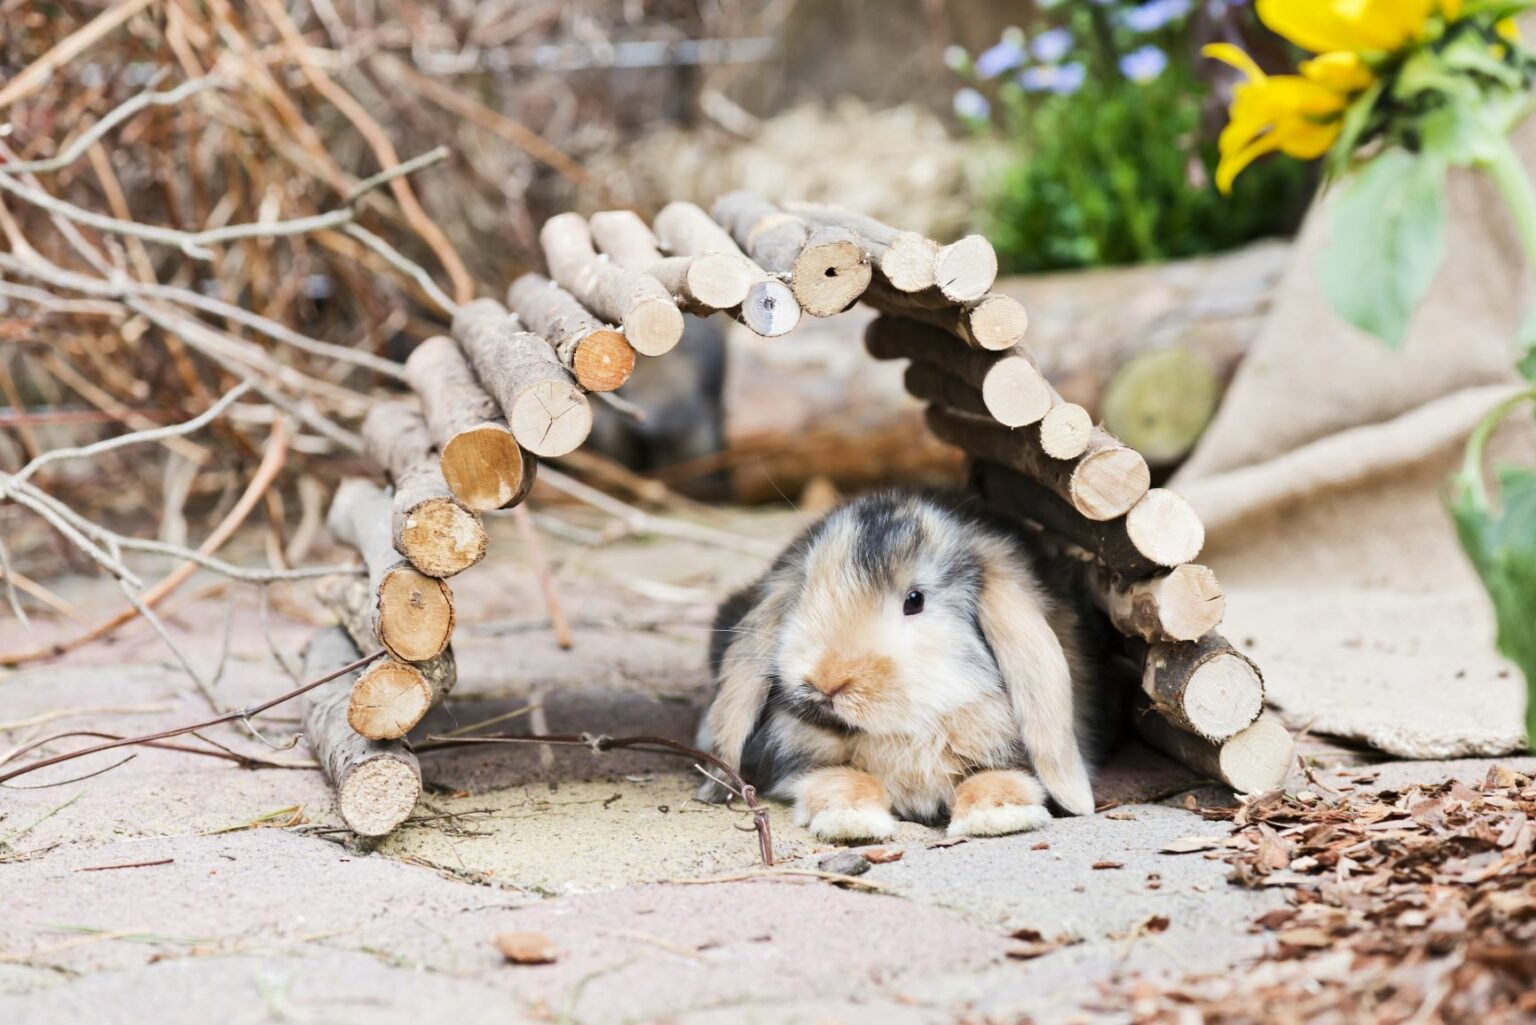 A rabbit in a wooden den.